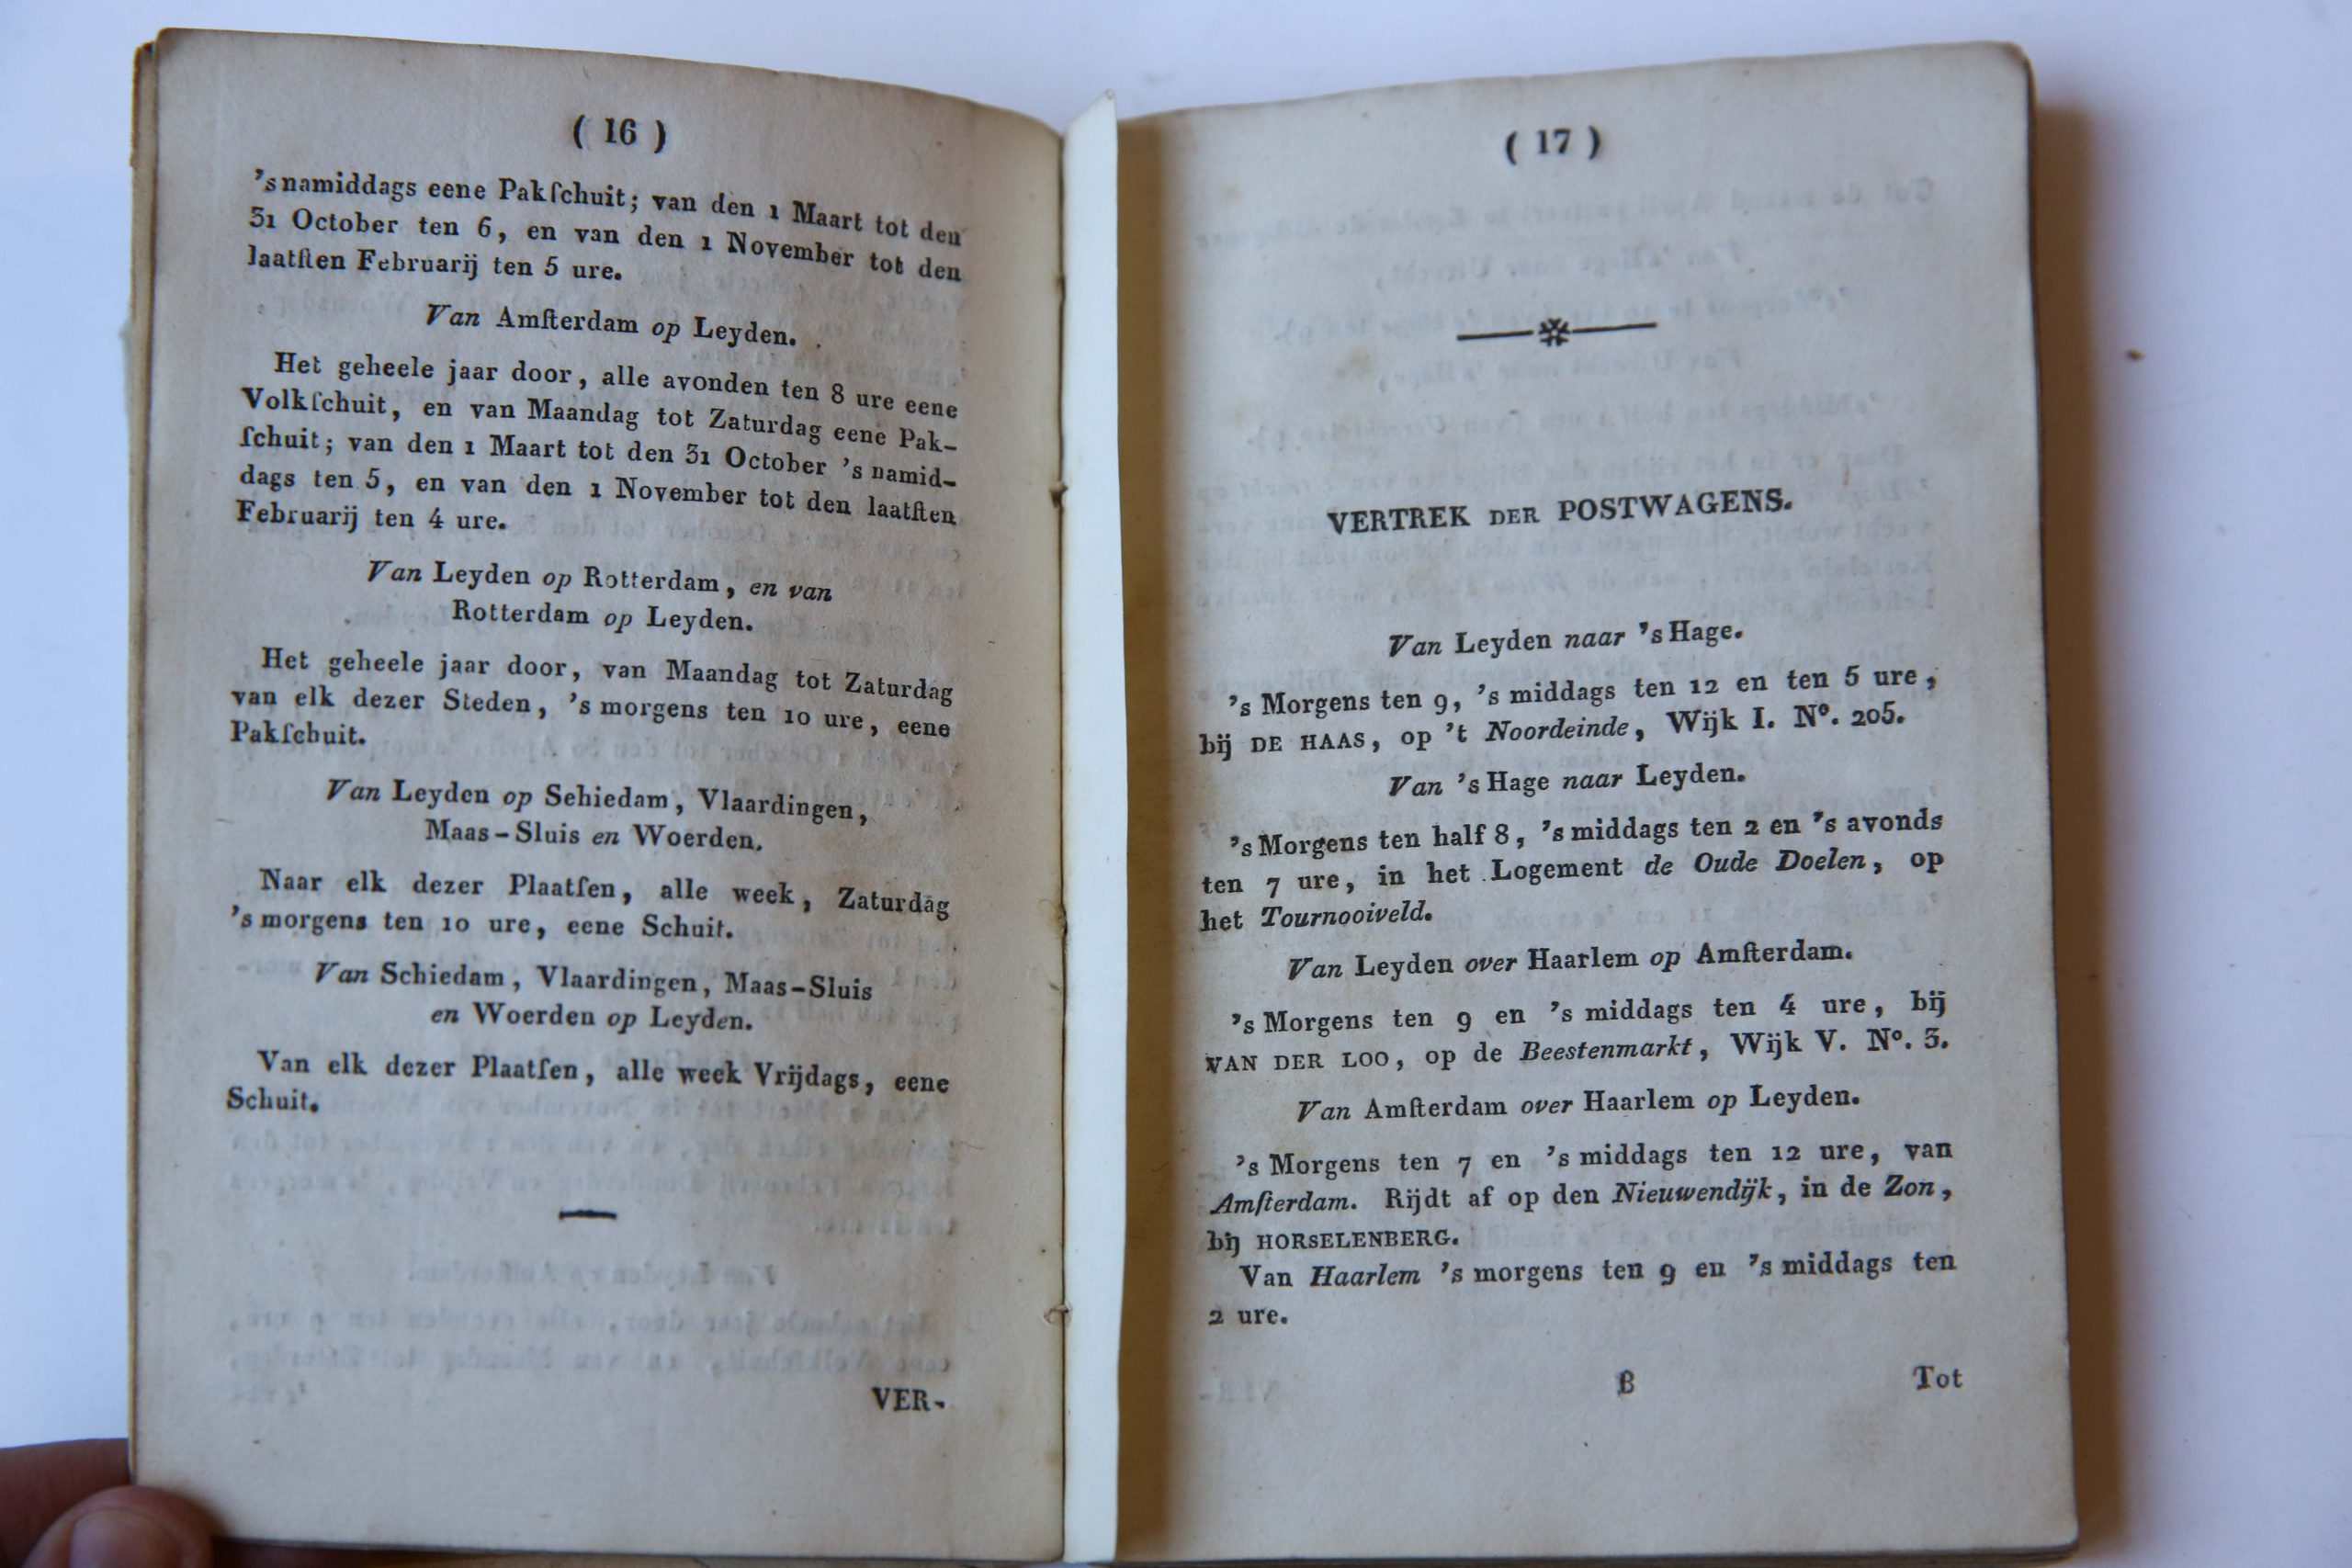 Studenten Almanak 1830, Leiden L. Herdingh en Zoon, 166 pp.